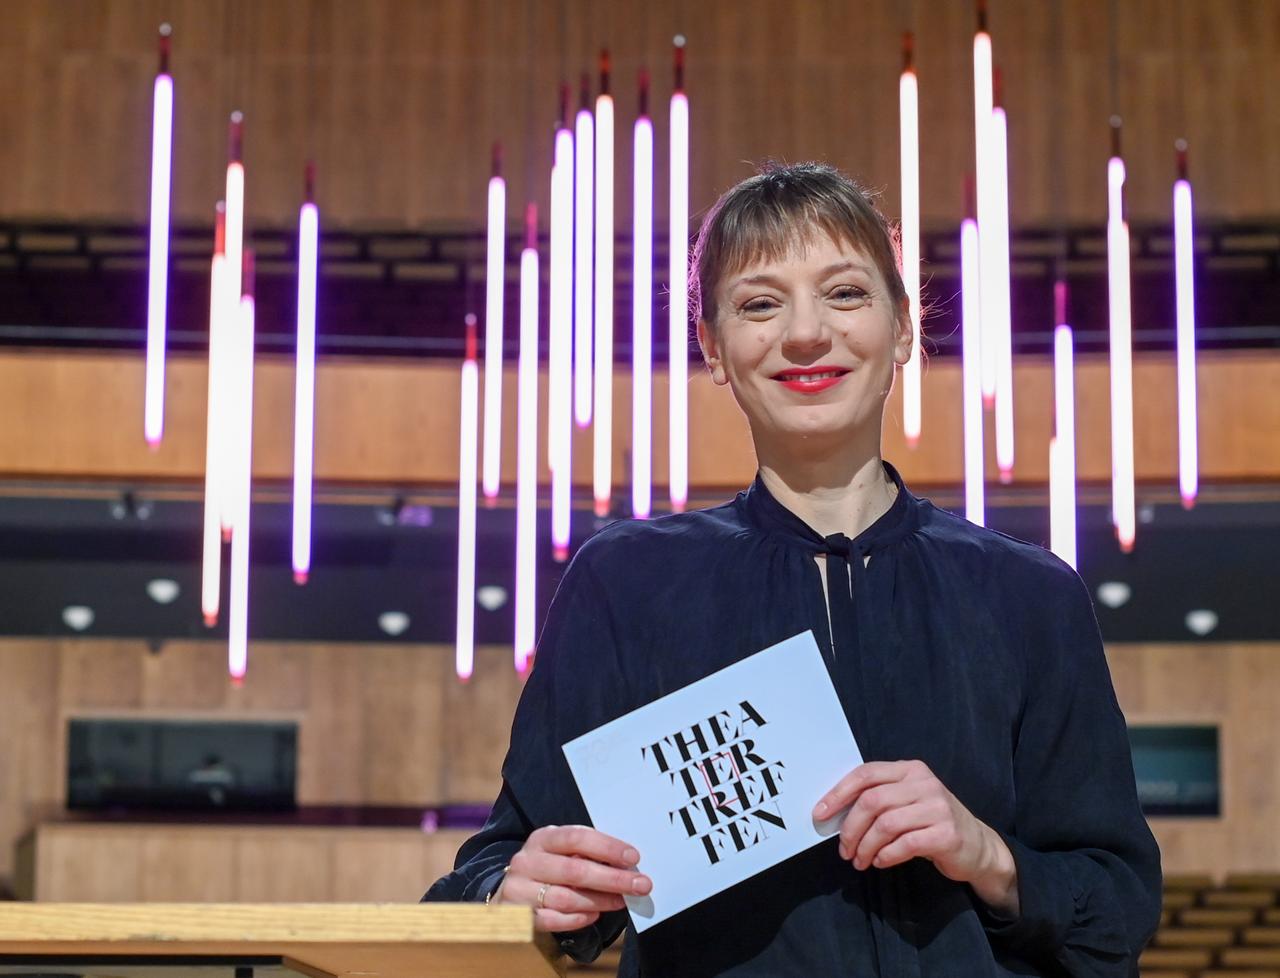 Yvonne Büdenhölzer, Leiterin des Theatertreffens der Berliner Festspiele, hält eine Karte mit der Aufschrift "Theatertreffen" in der Hand.